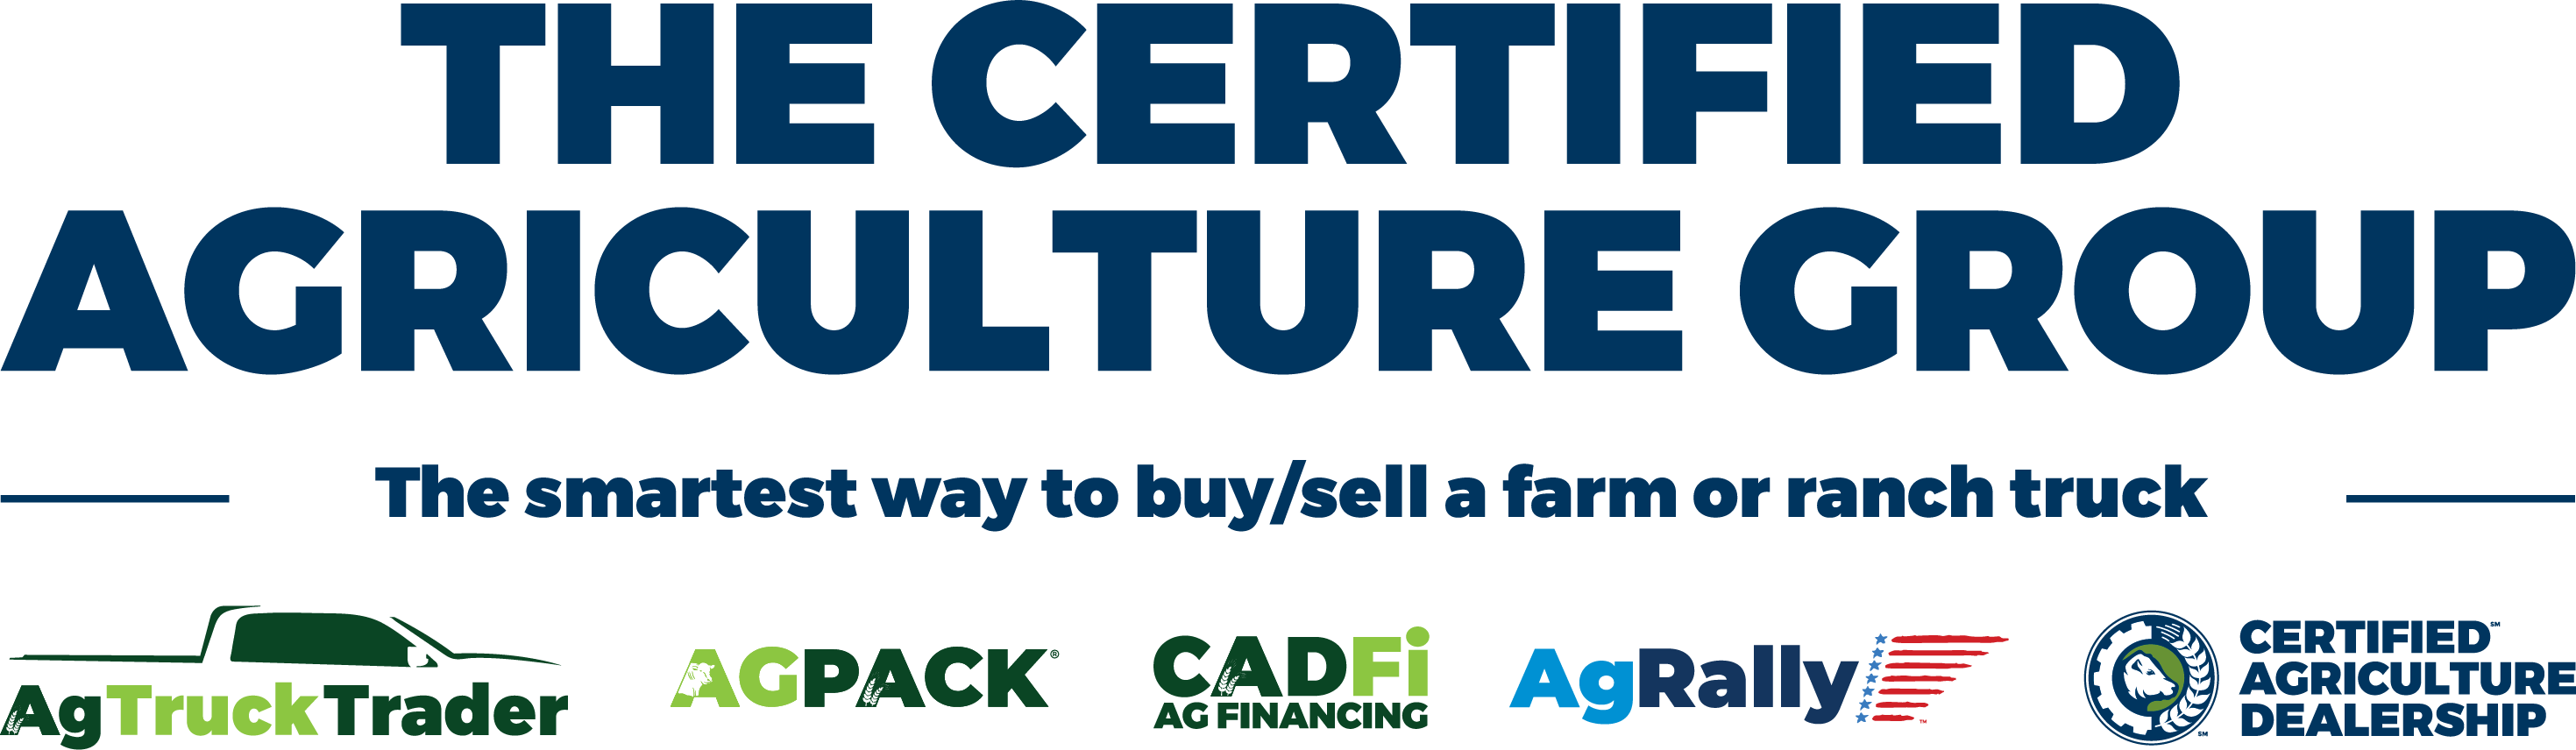 Certified Agriculture Dealer’s AgPack®